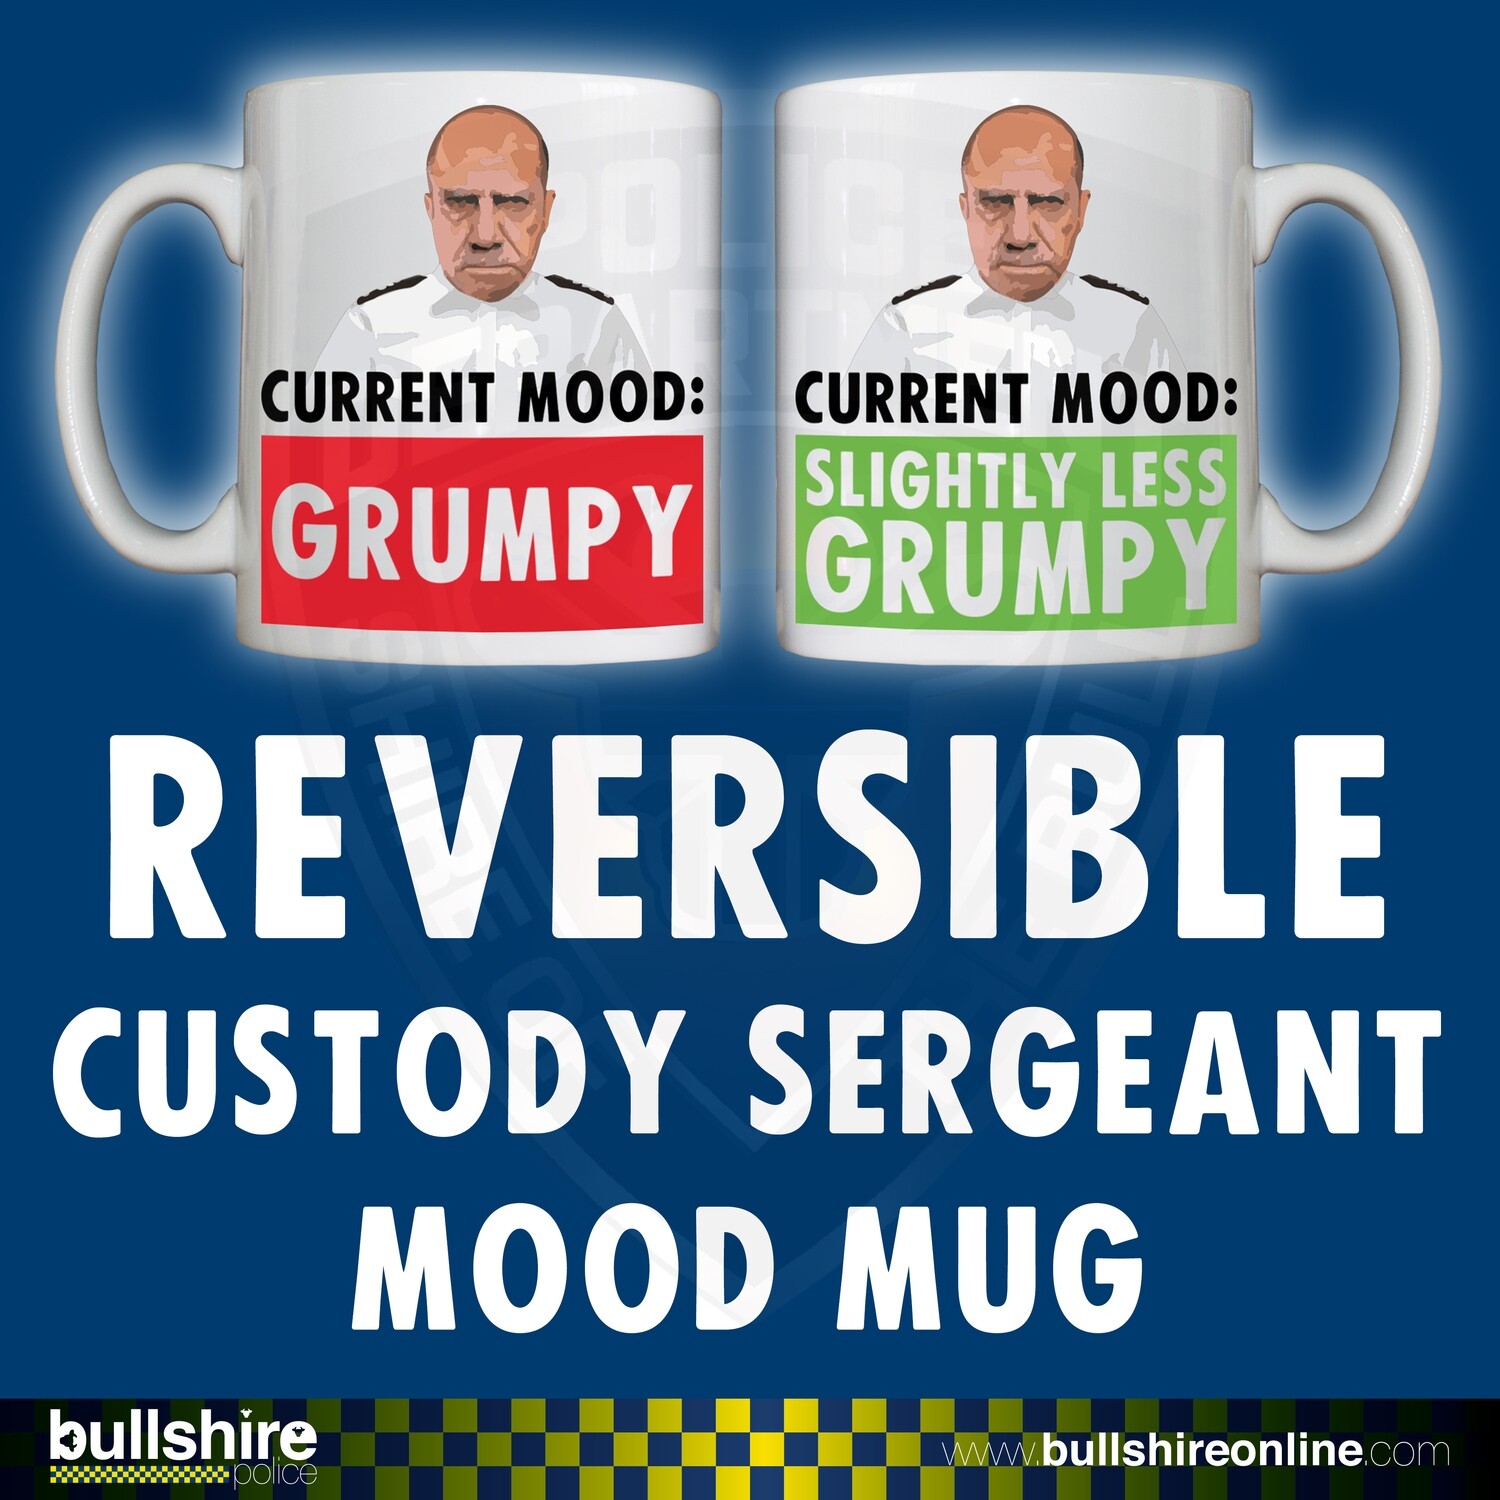 Reversible/Personalised 'Custody Sergeant Mood' Drinking Vessel